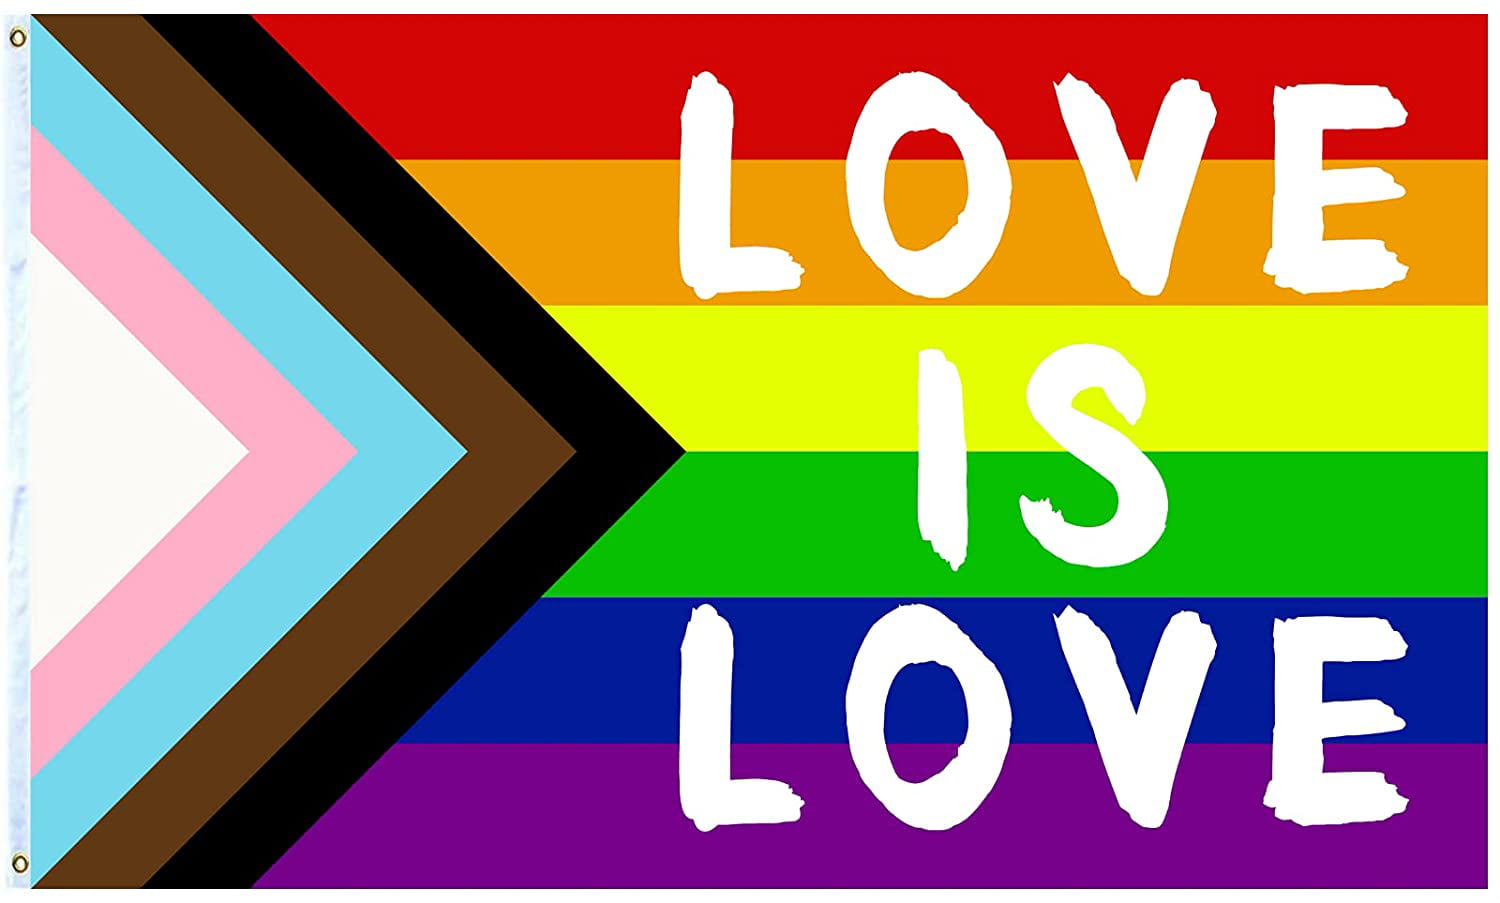 transgender gay pride flag